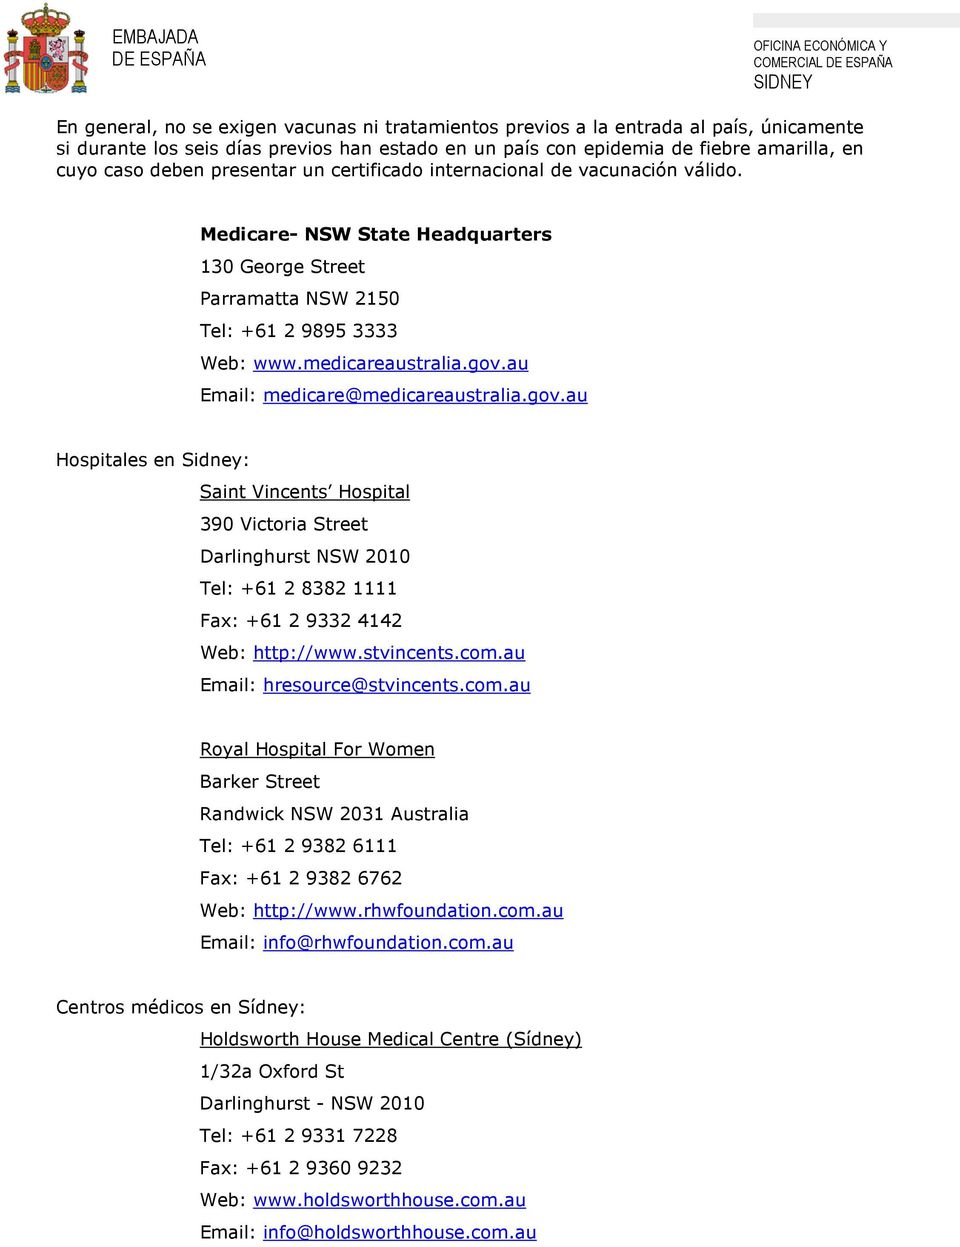 au Email: medicare@medicareaustralia.gov.au Hospitales en Sidney: Saint Vincents Hospital 390 Victoria Street Darlinghurst NSW 2010 Tel: +61 2 8382 1111 Fax: +61 2 9332 4142 Web: http://www.